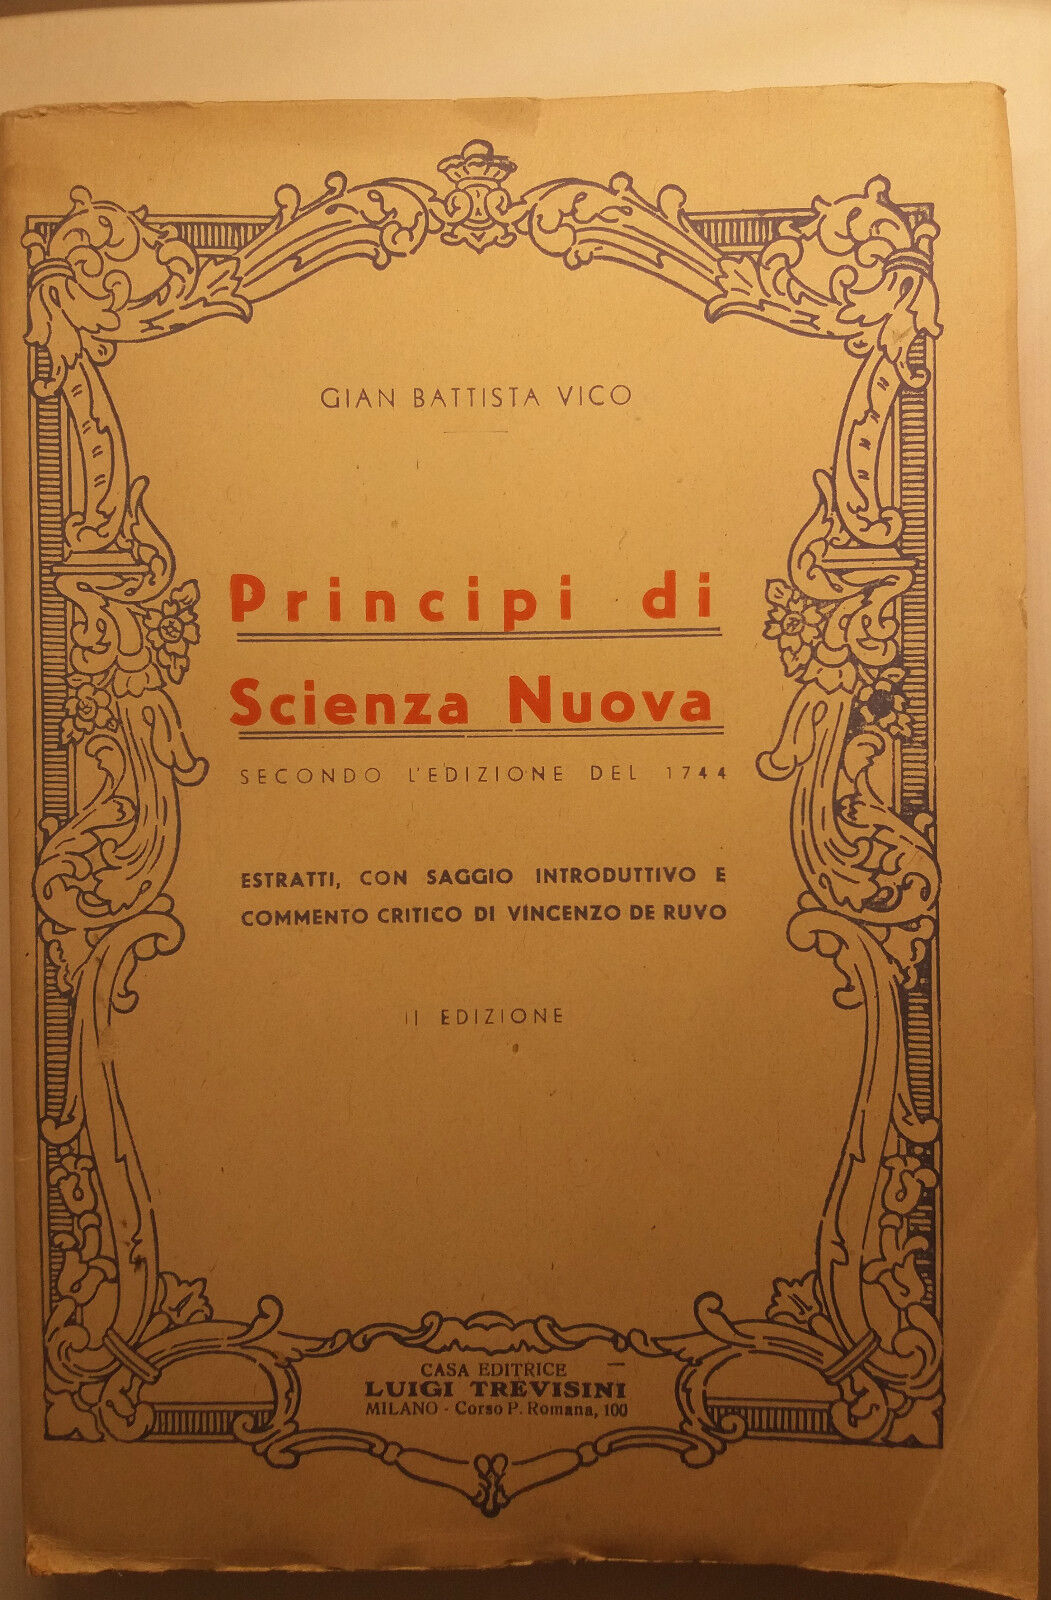 Principi di scienza nuova - Gian Battista Vico - Luigi Trevisini - 1947 - G